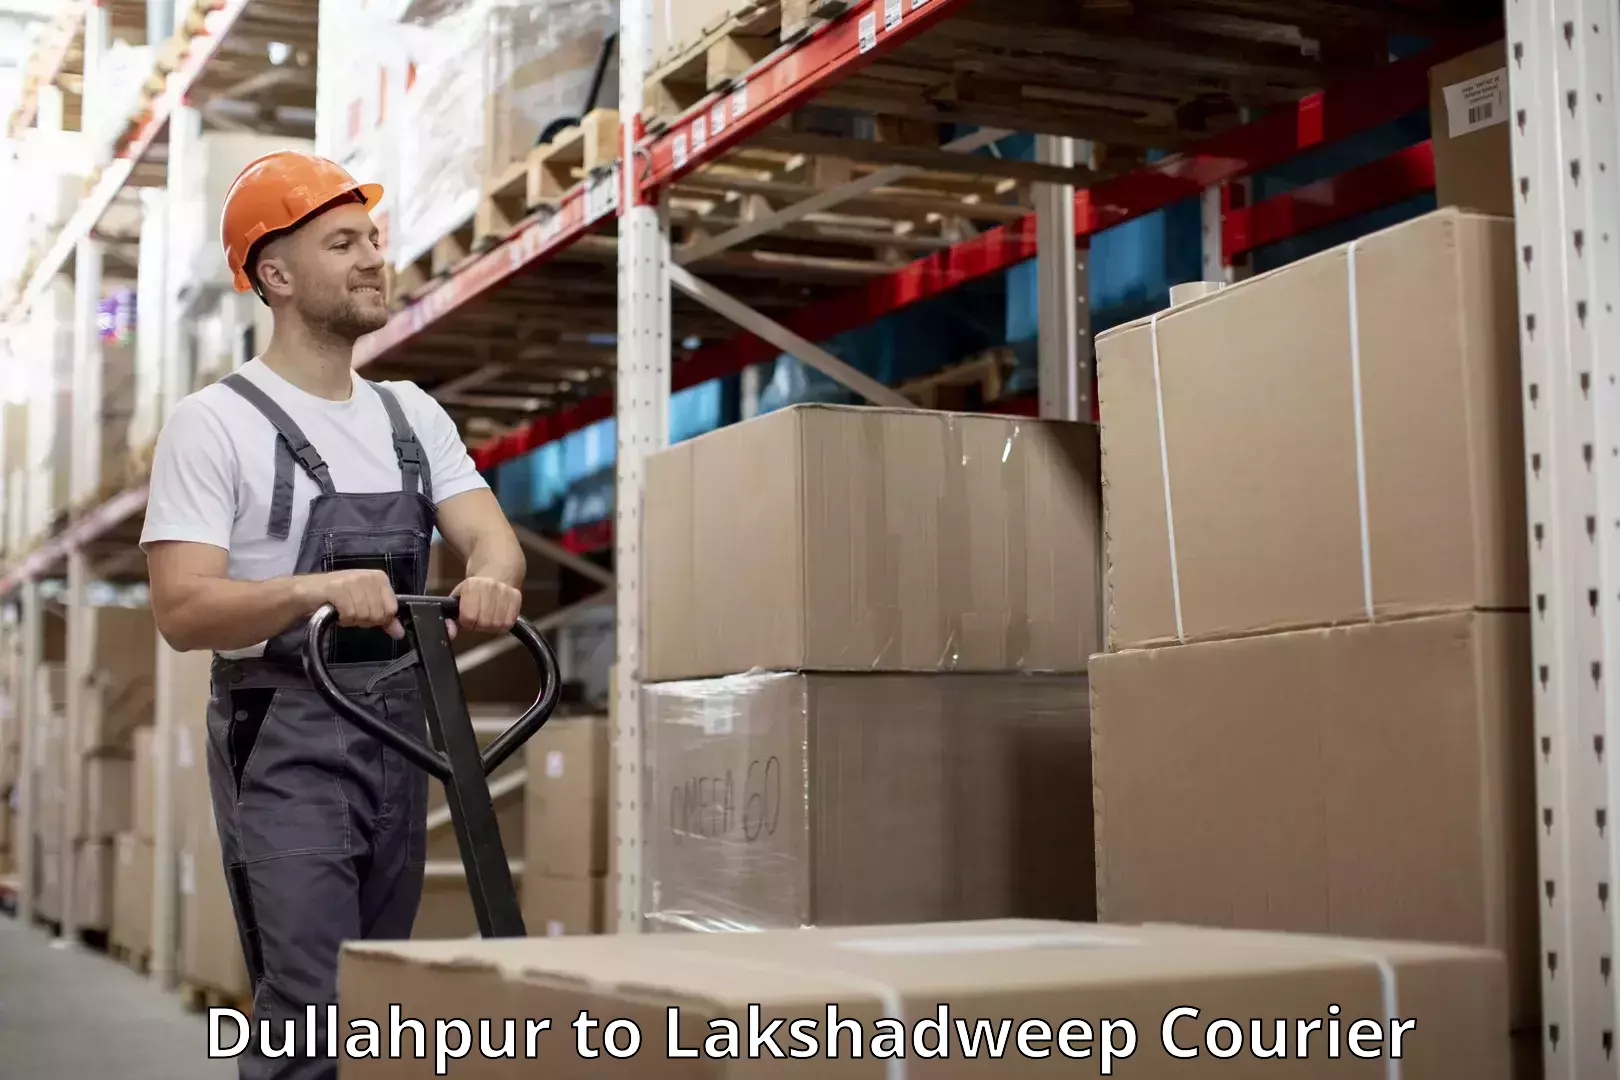 Luggage transport service Dullahpur to Lakshadweep